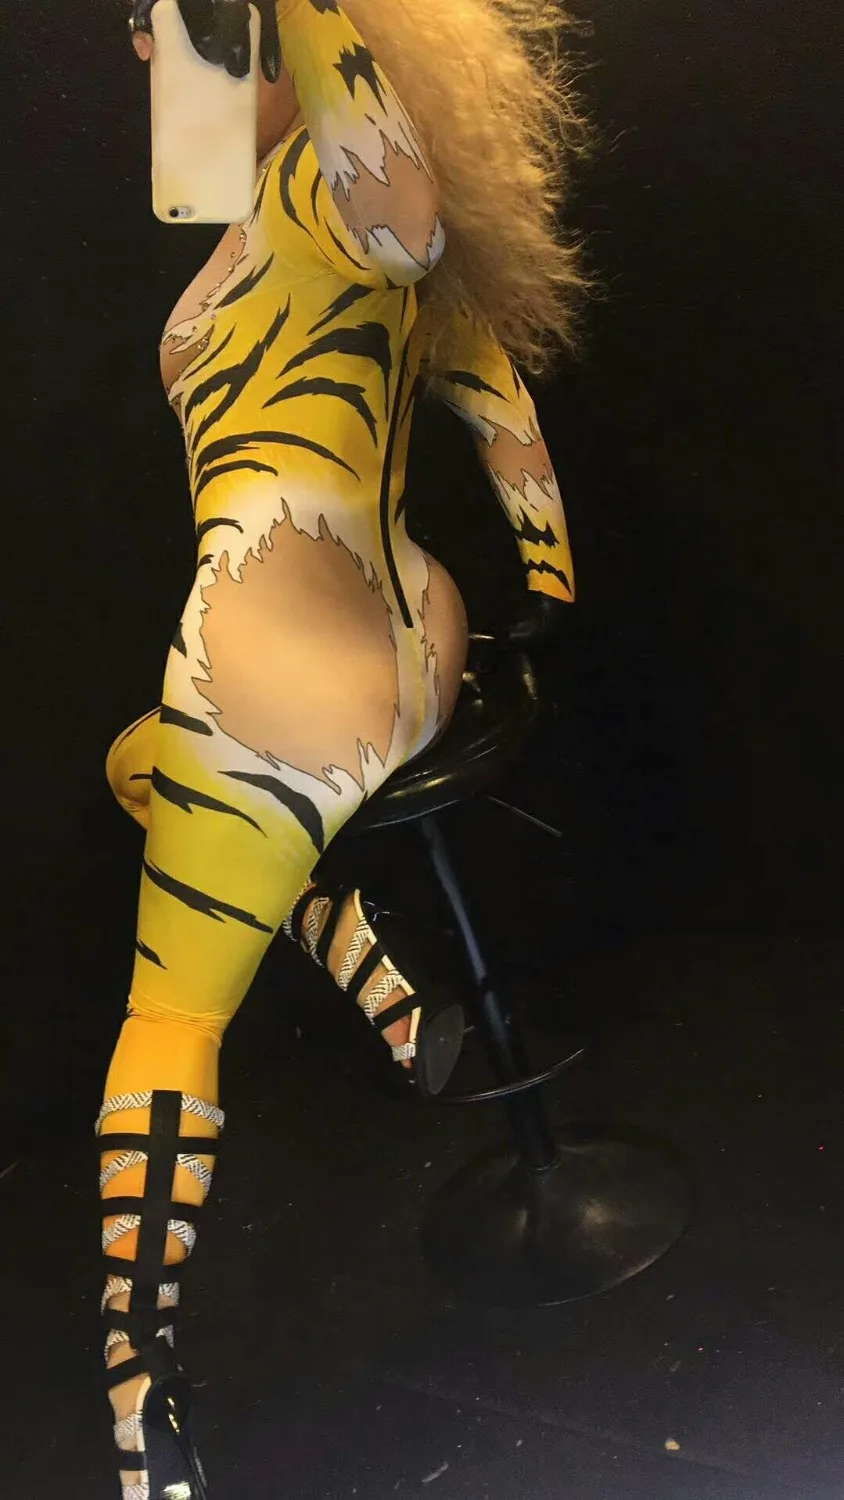 Женский комбинезон с тигровым принтом, украшенный стразами и облегающий тело. Костюм для выступлений на сцене.